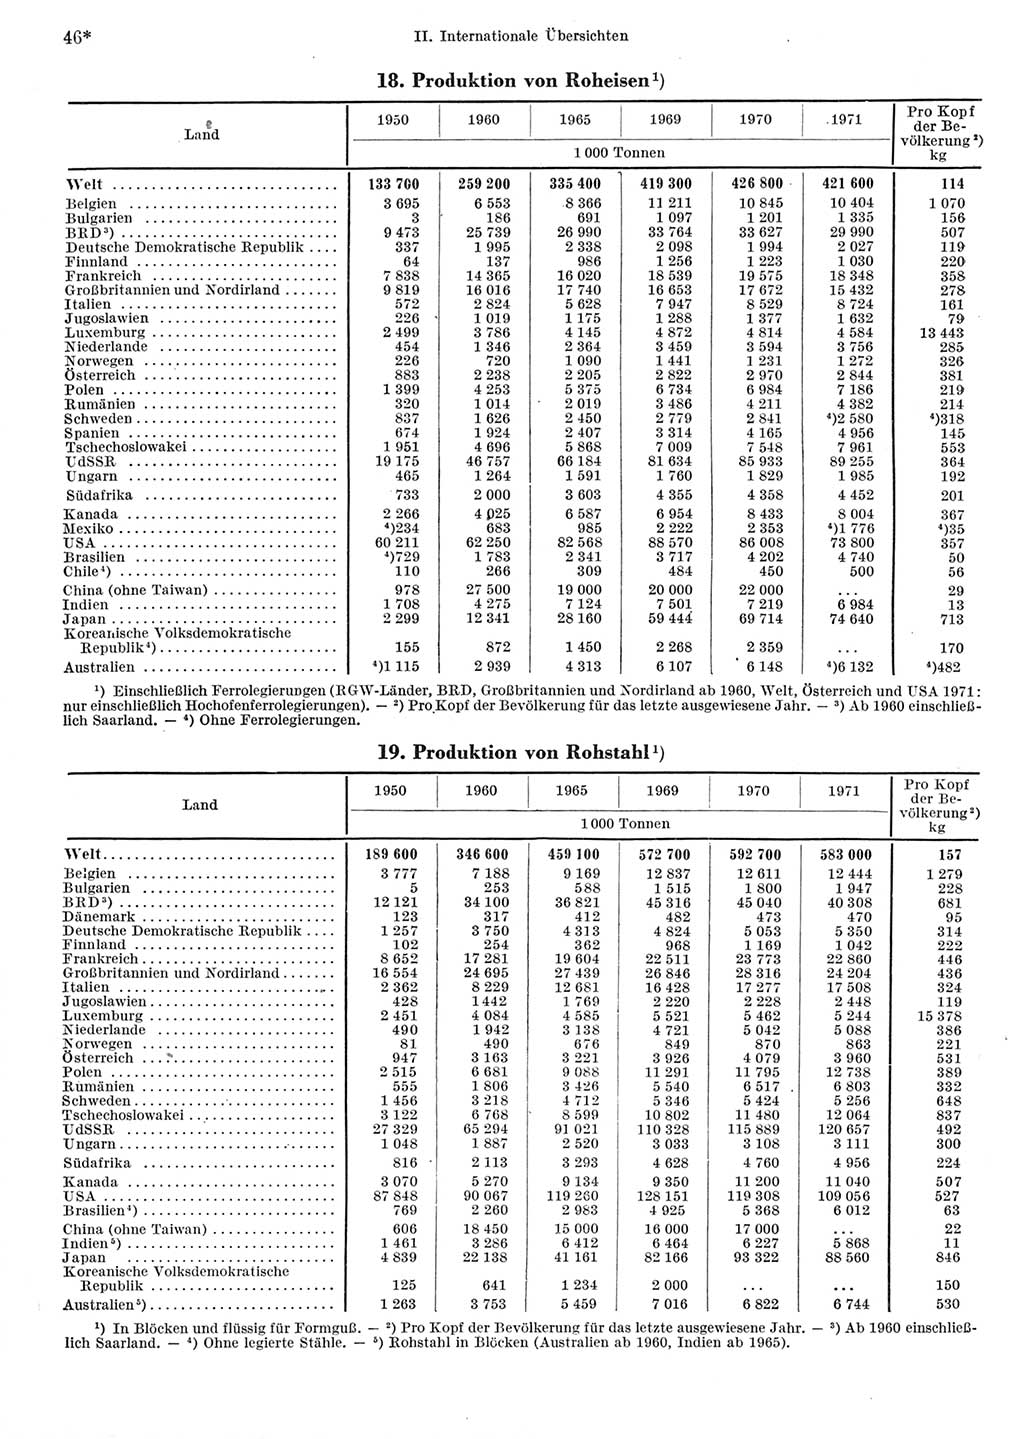 Statistisches Jahrbuch der Deutschen Demokratischen Republik (DDR) 1973, Seite 46 (Stat. Jb. DDR 1973, S. 46)